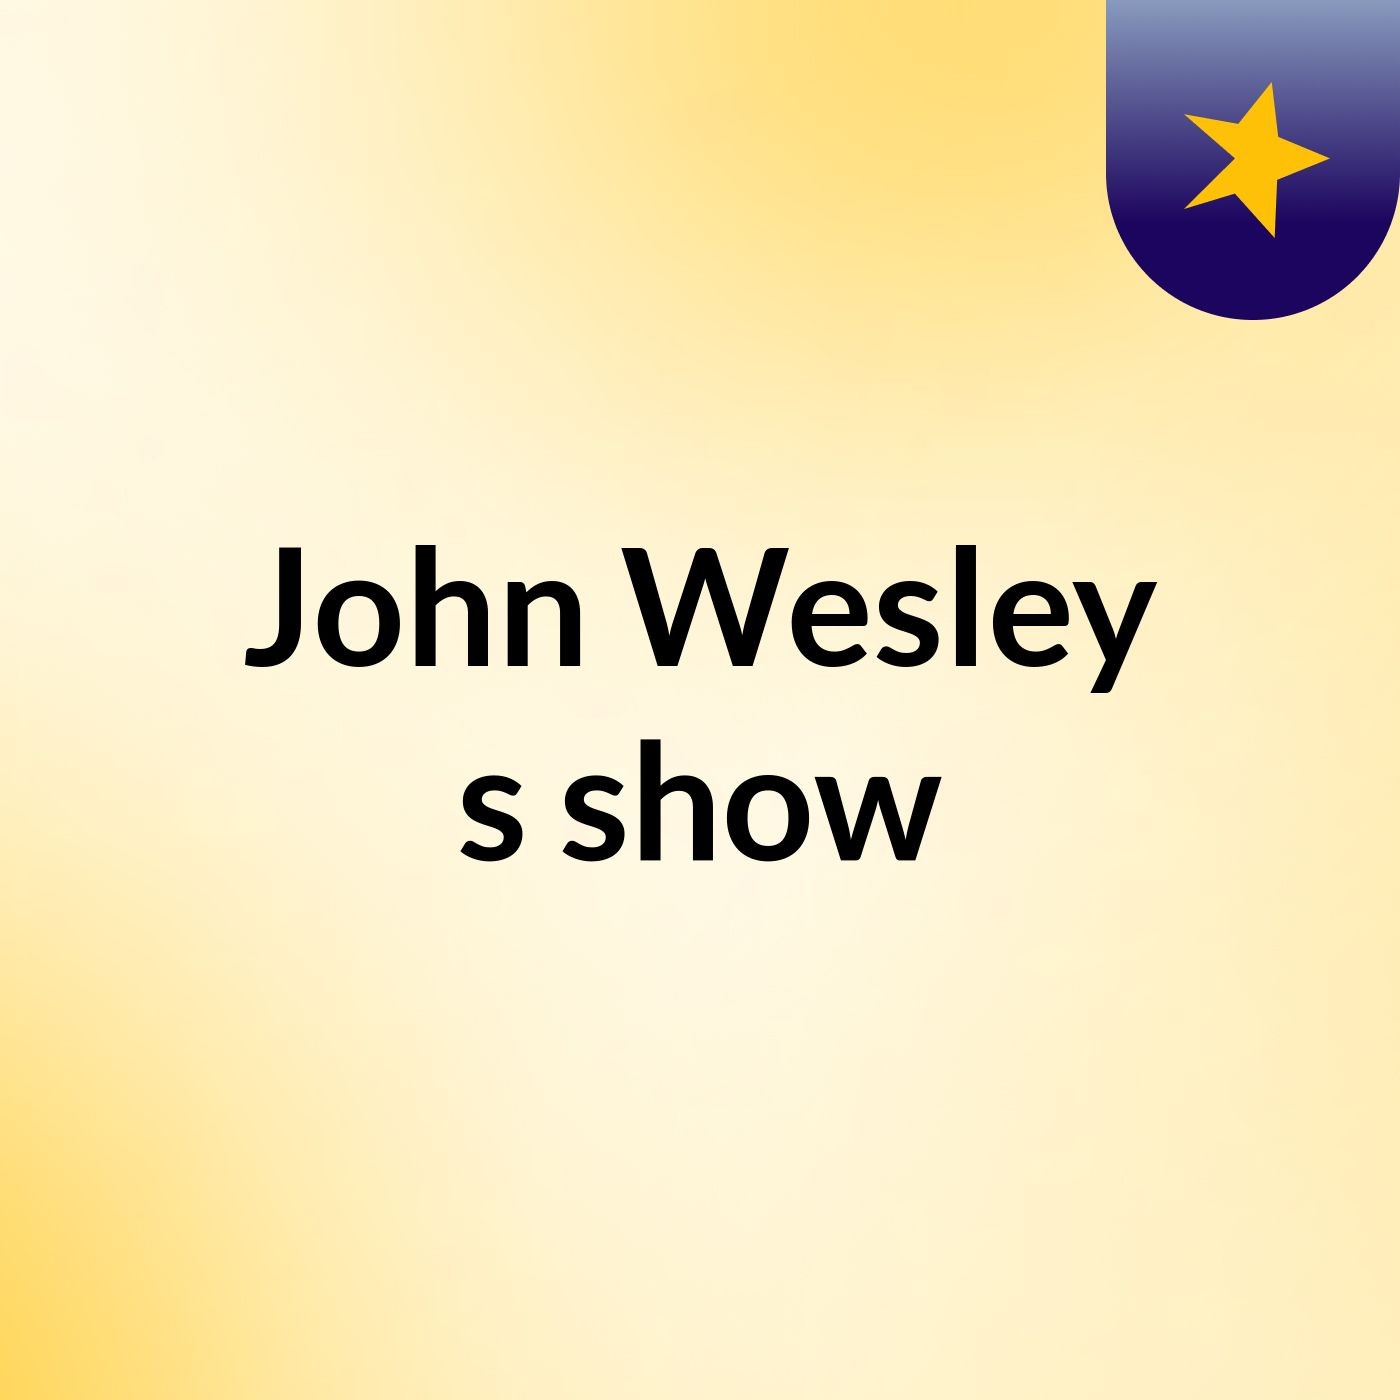 John Wesley's show